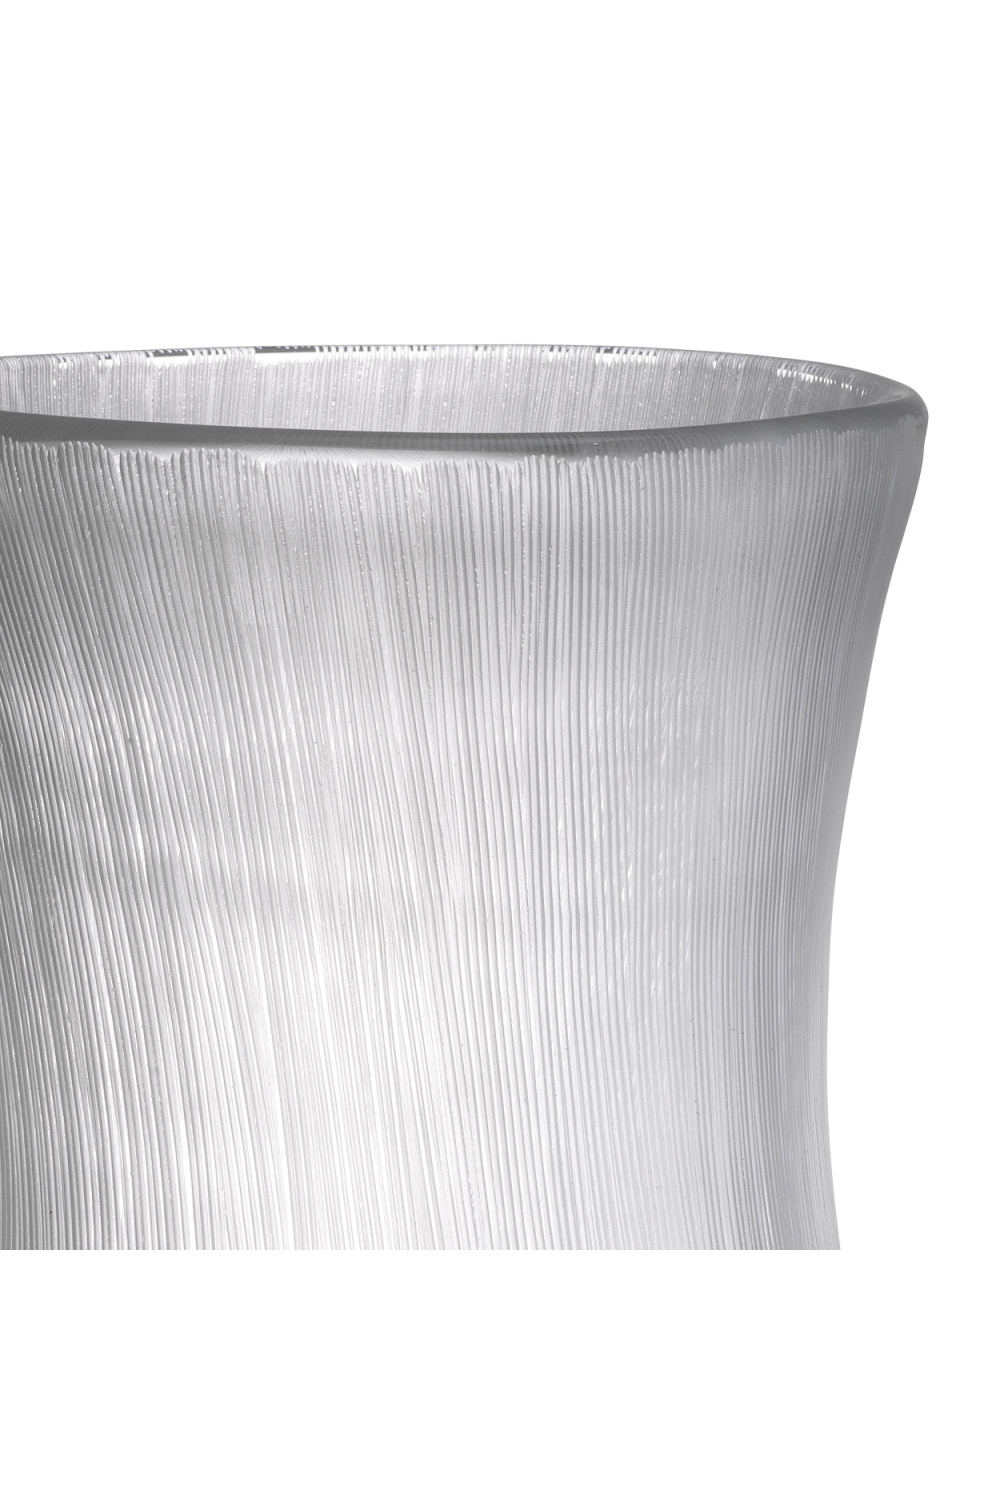 Clear Hand Blown Glass Vase | Eichholtz Thiara | Oroa.com